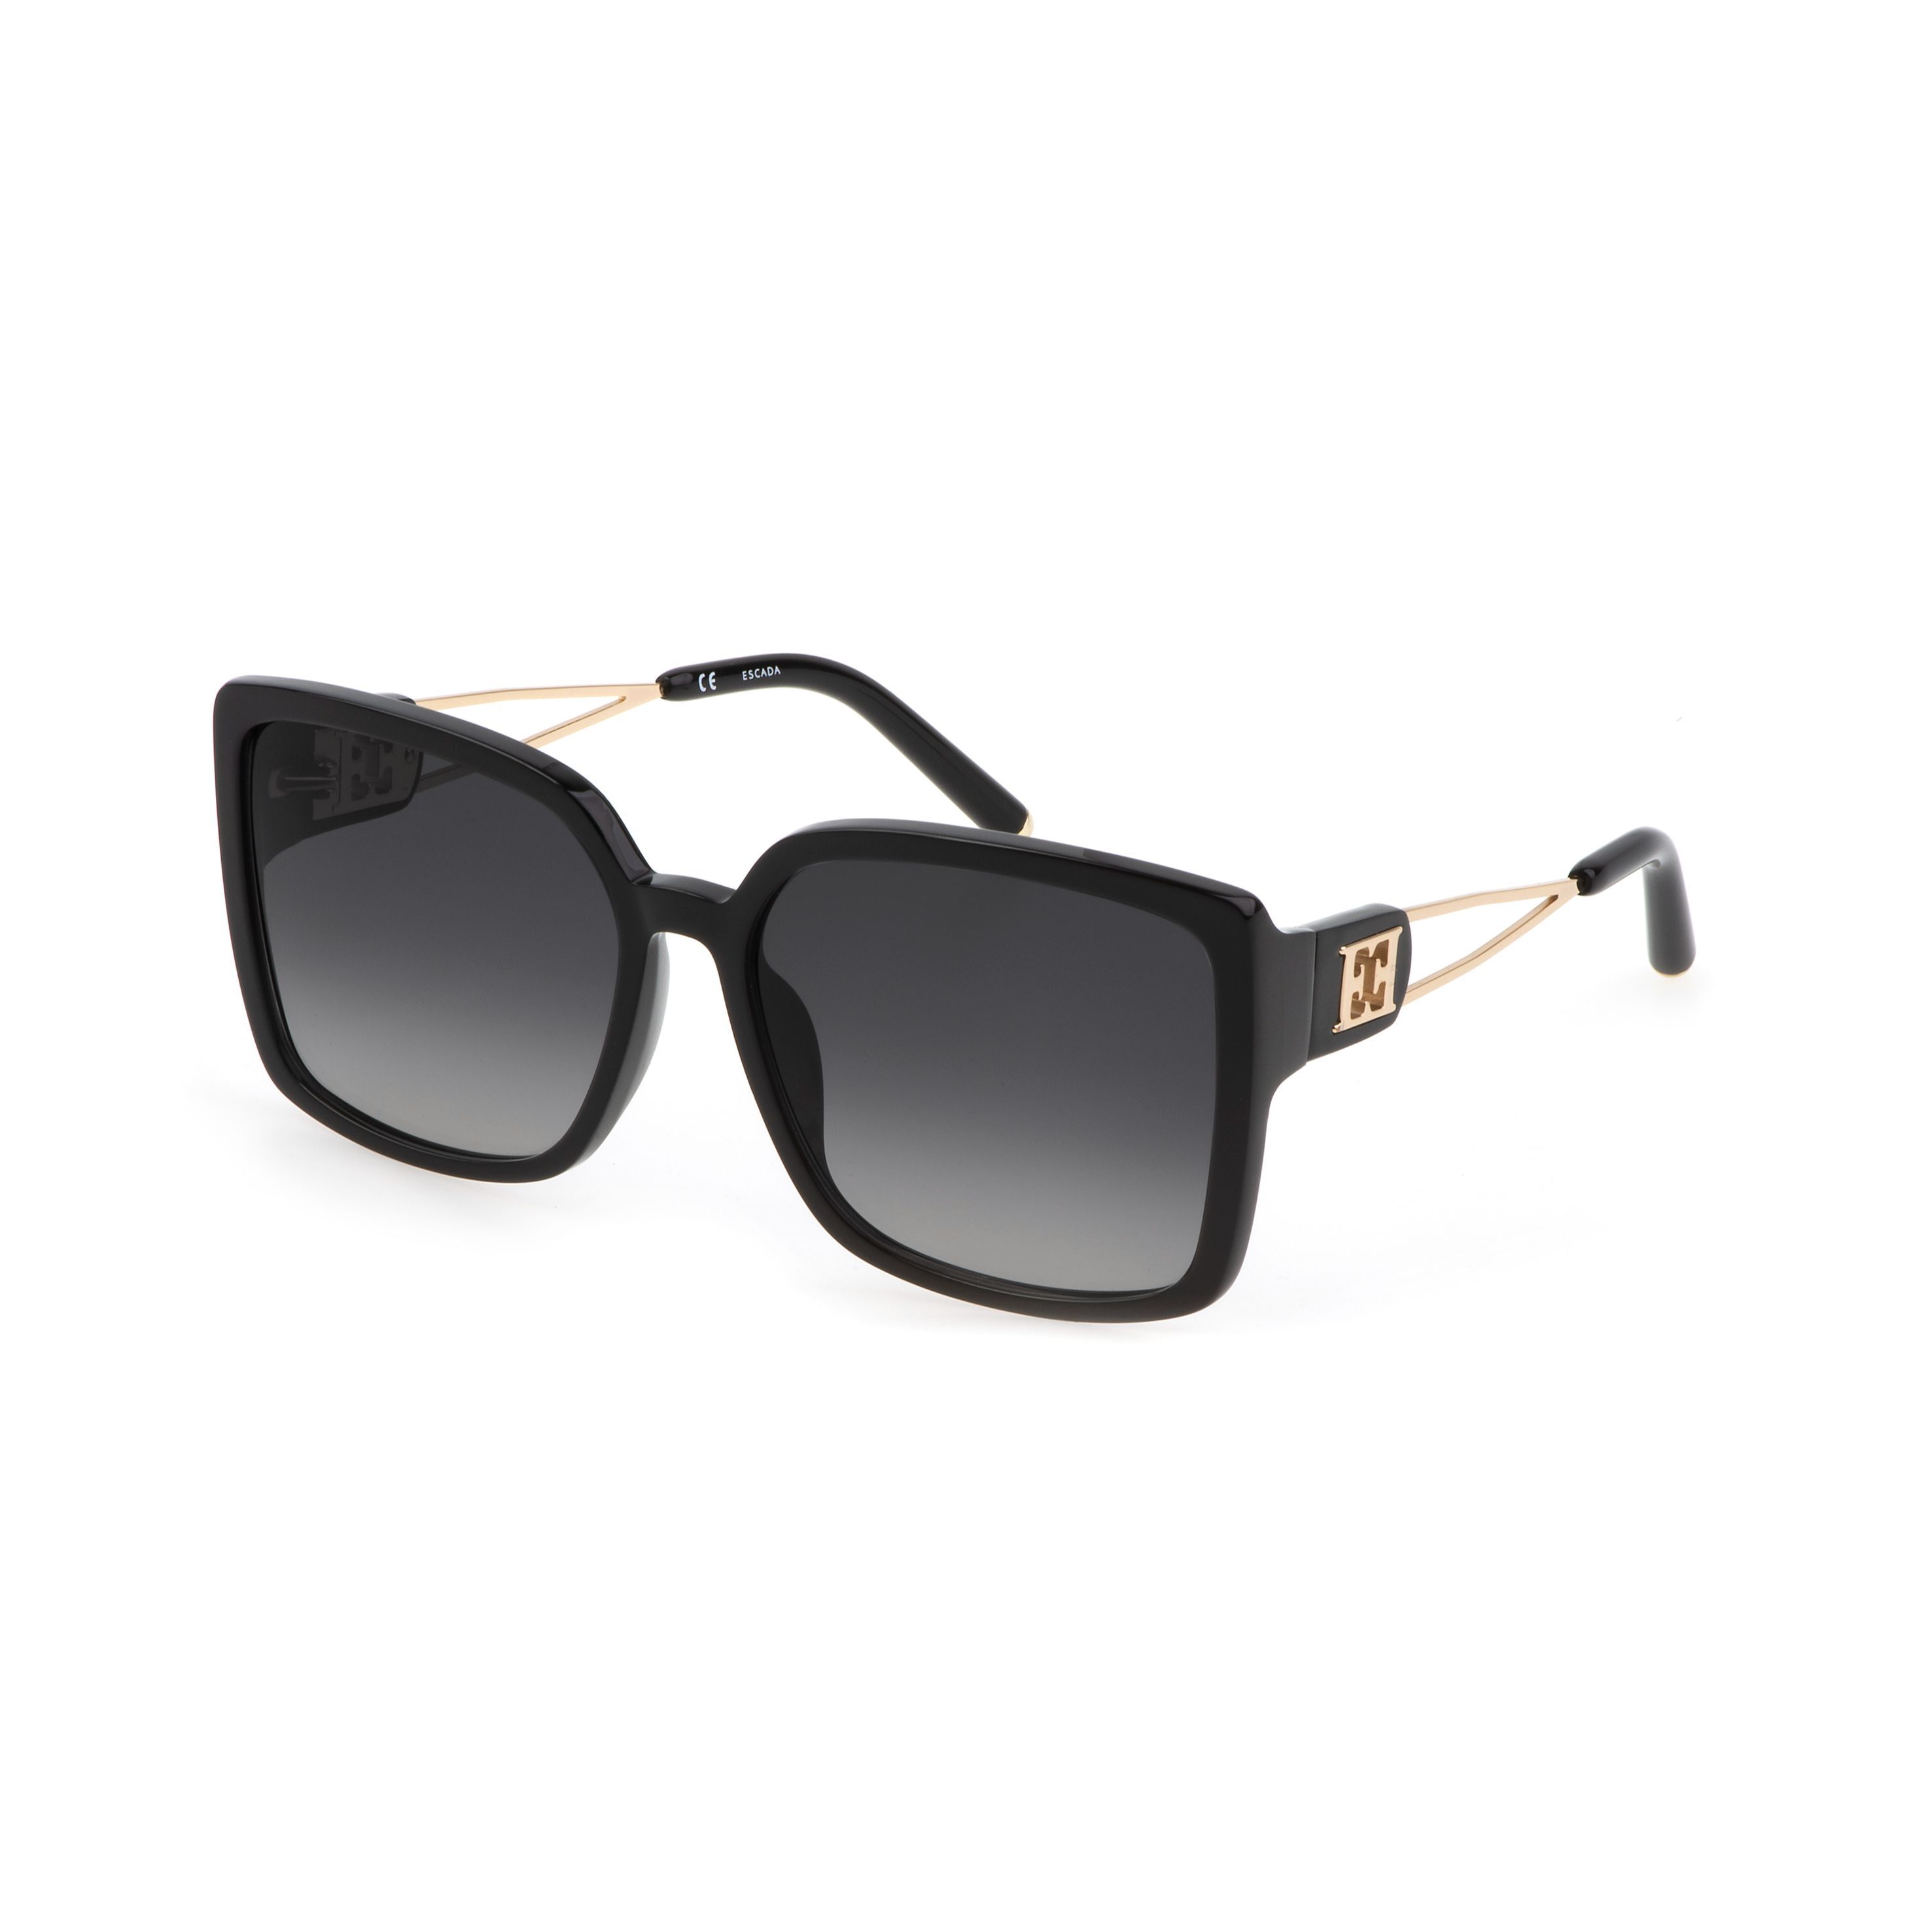 SESD31 Square Sunglasses 700 - size 59